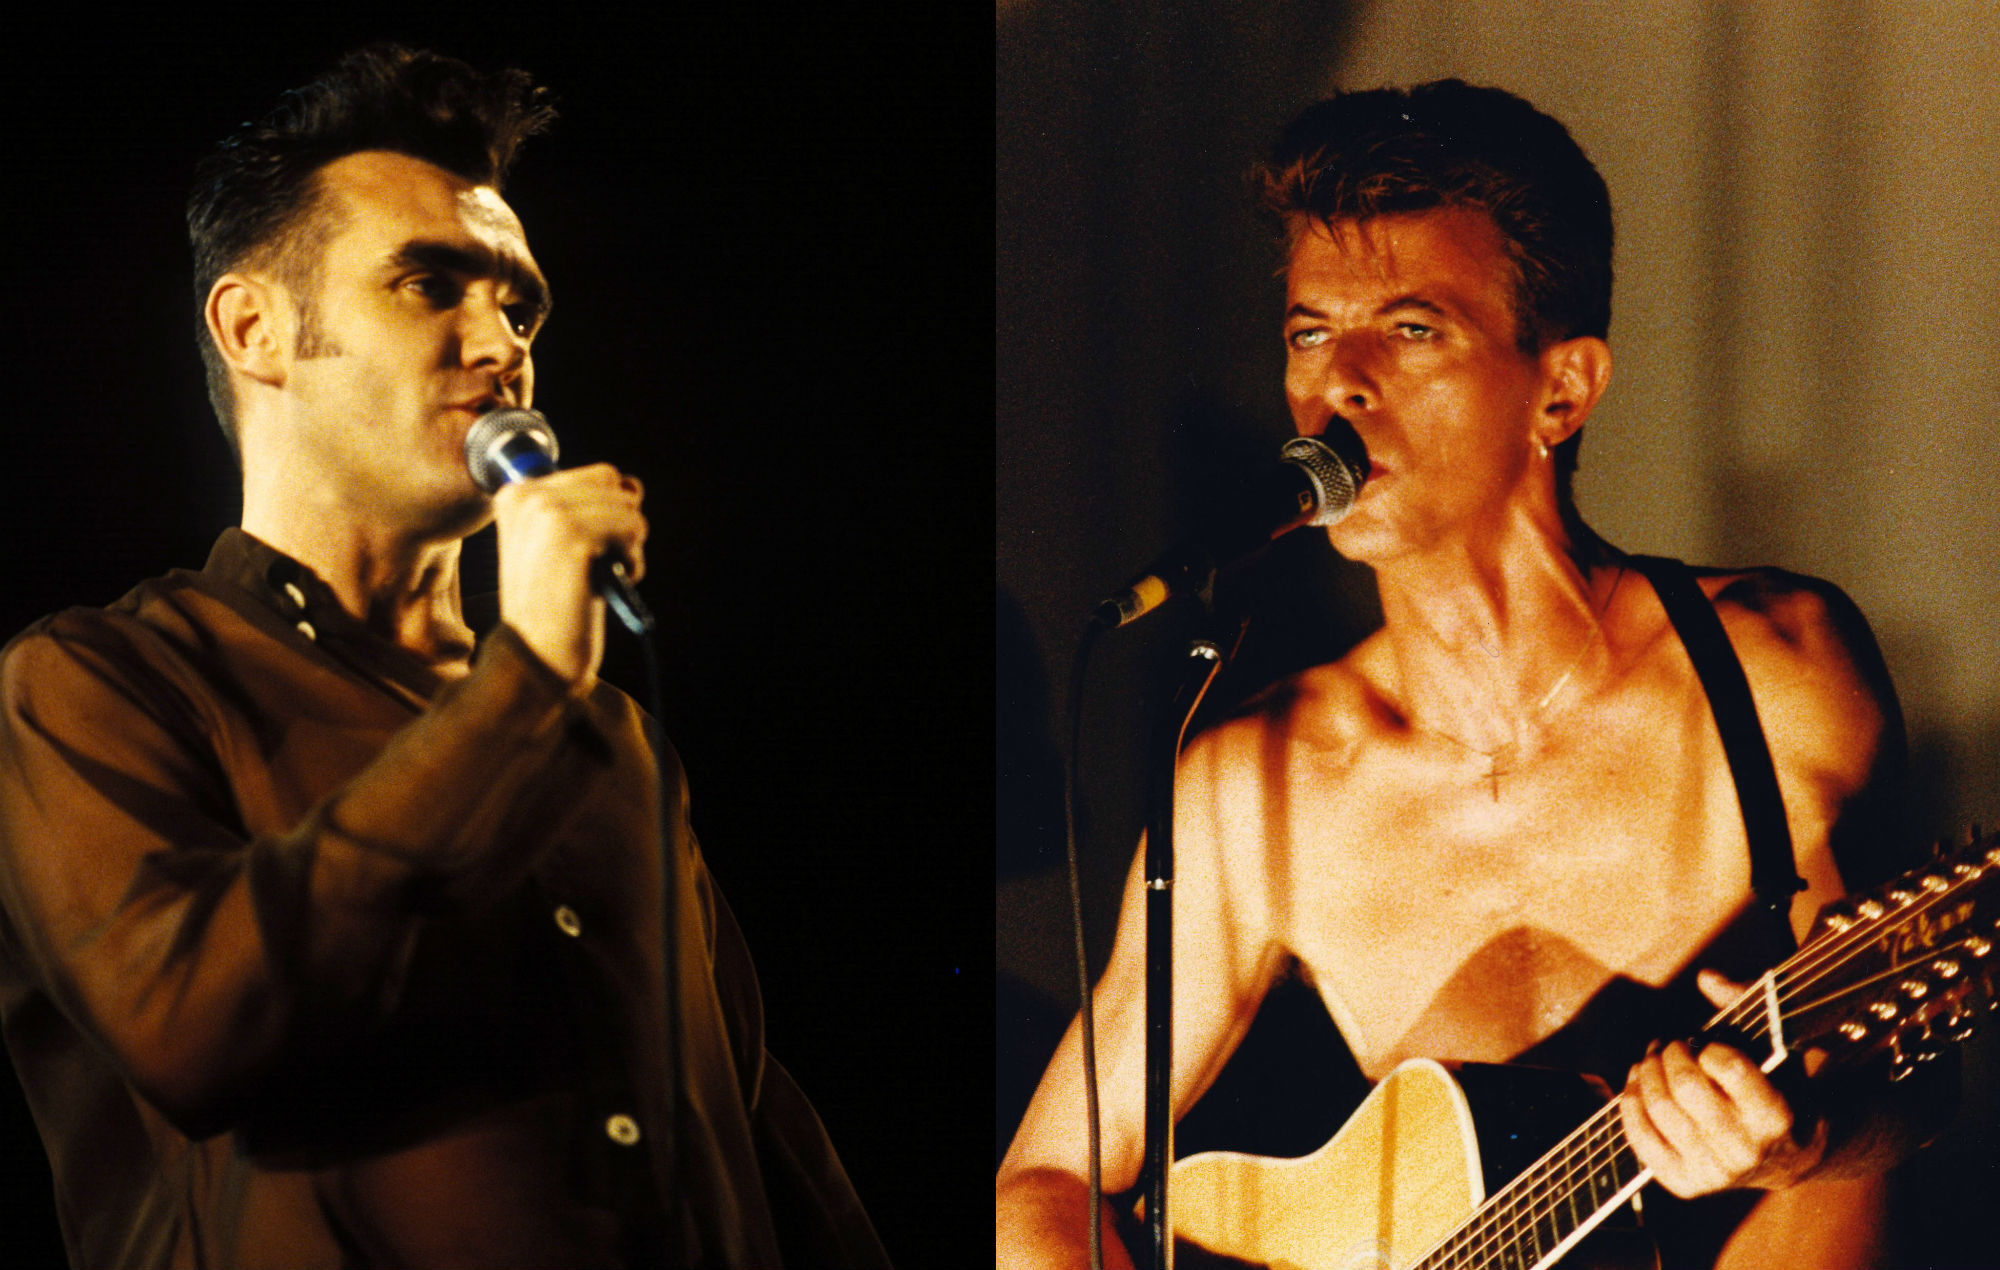 Mira un video remasterizado de Morrissey y David Bowie interpretando "Cosmic Dancer" de T-Rex